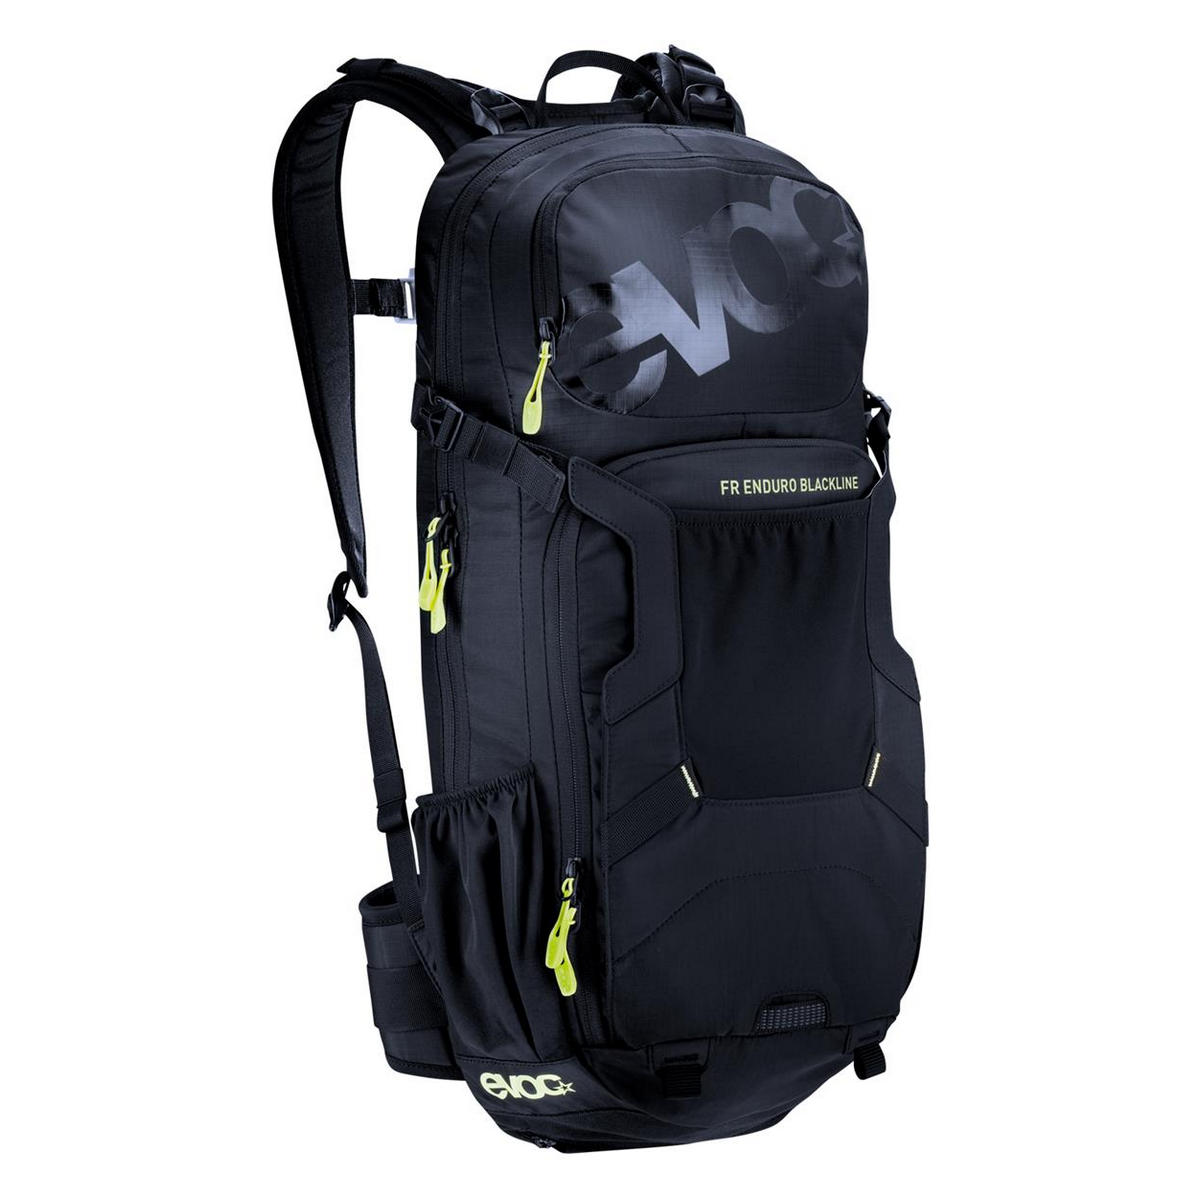 FR enduro blackline backpack 18lt with back protector size XL